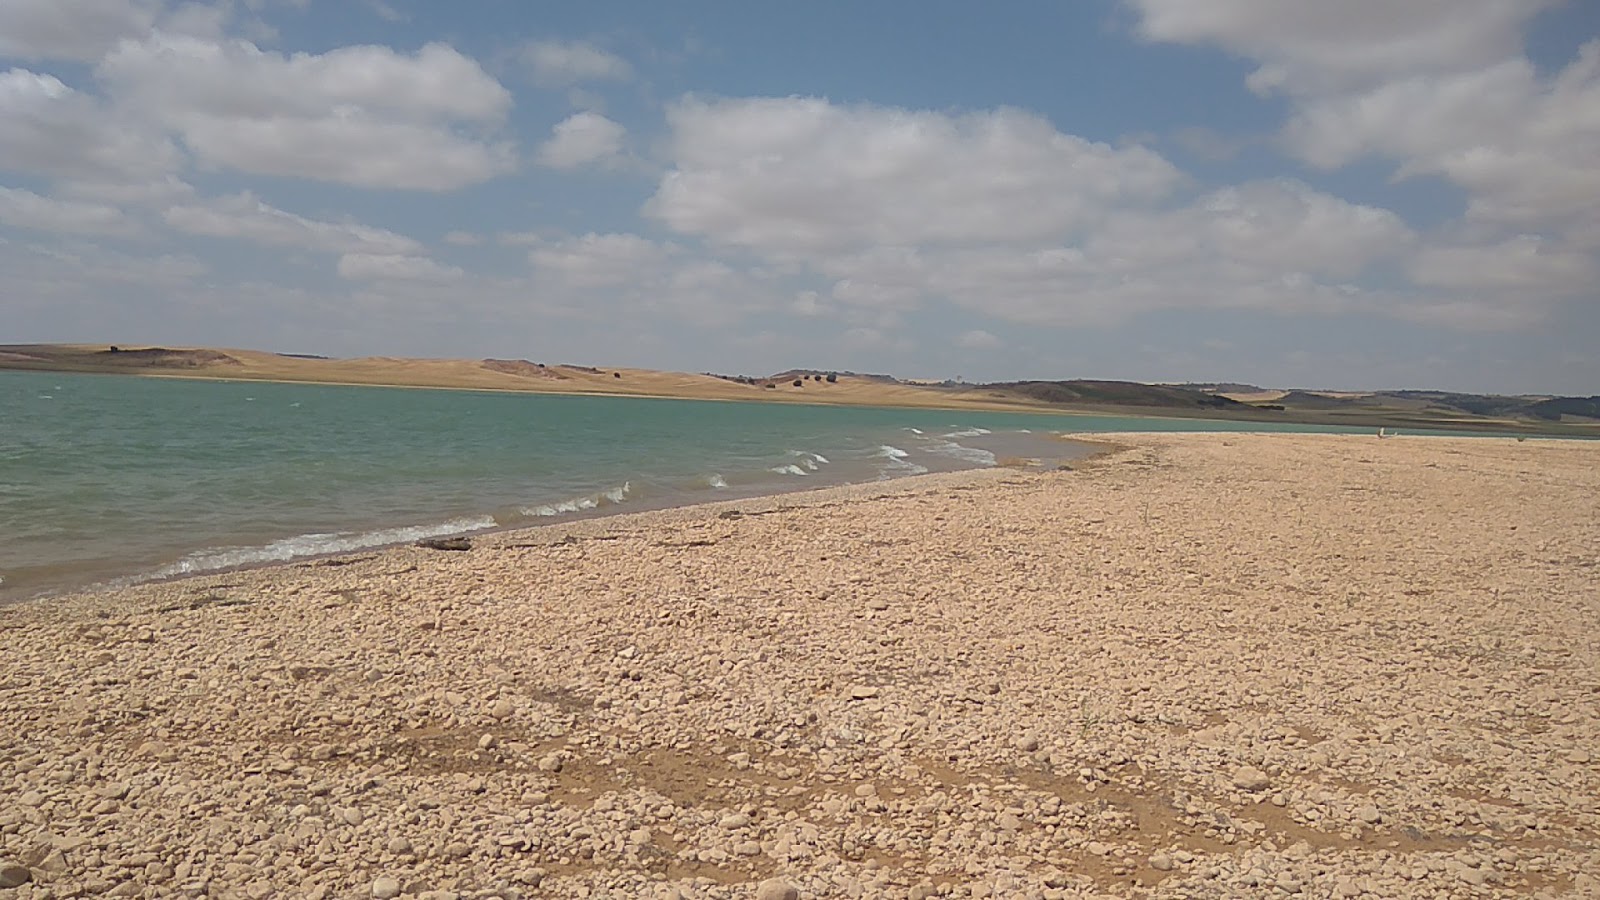 Zdjęcie Playa del arbol z powierzchnią jasny piasek i skały